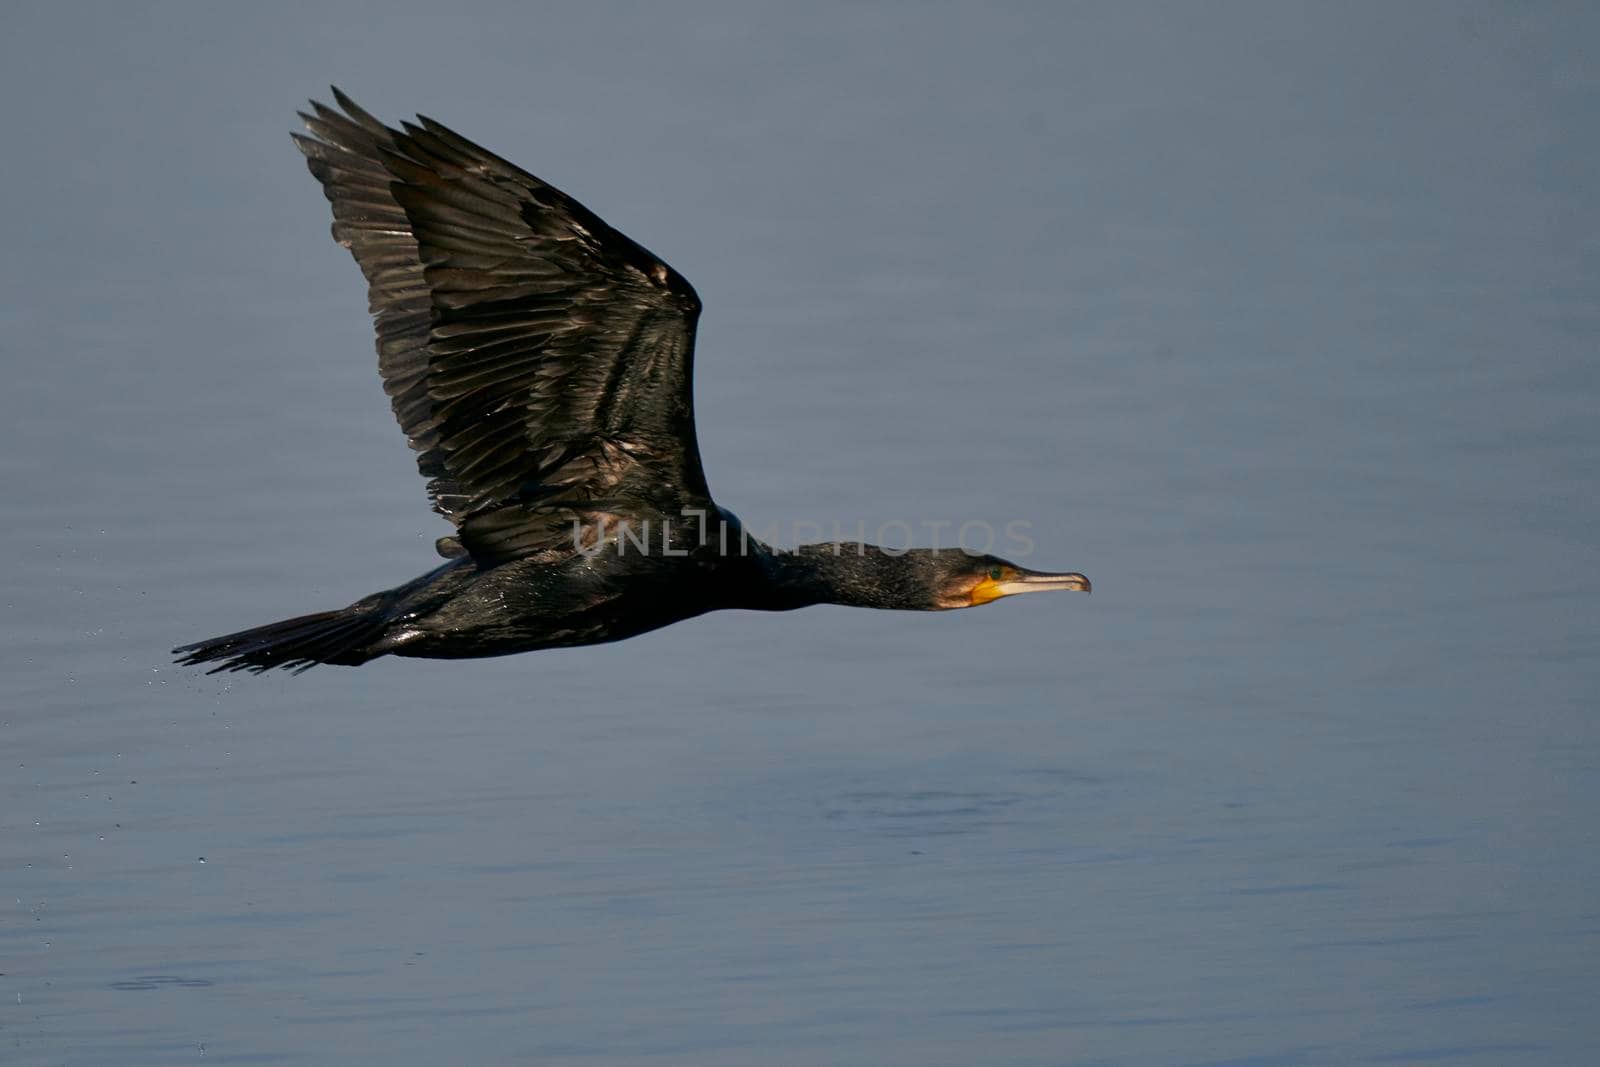 Cormorant in flight by JeremyRichards